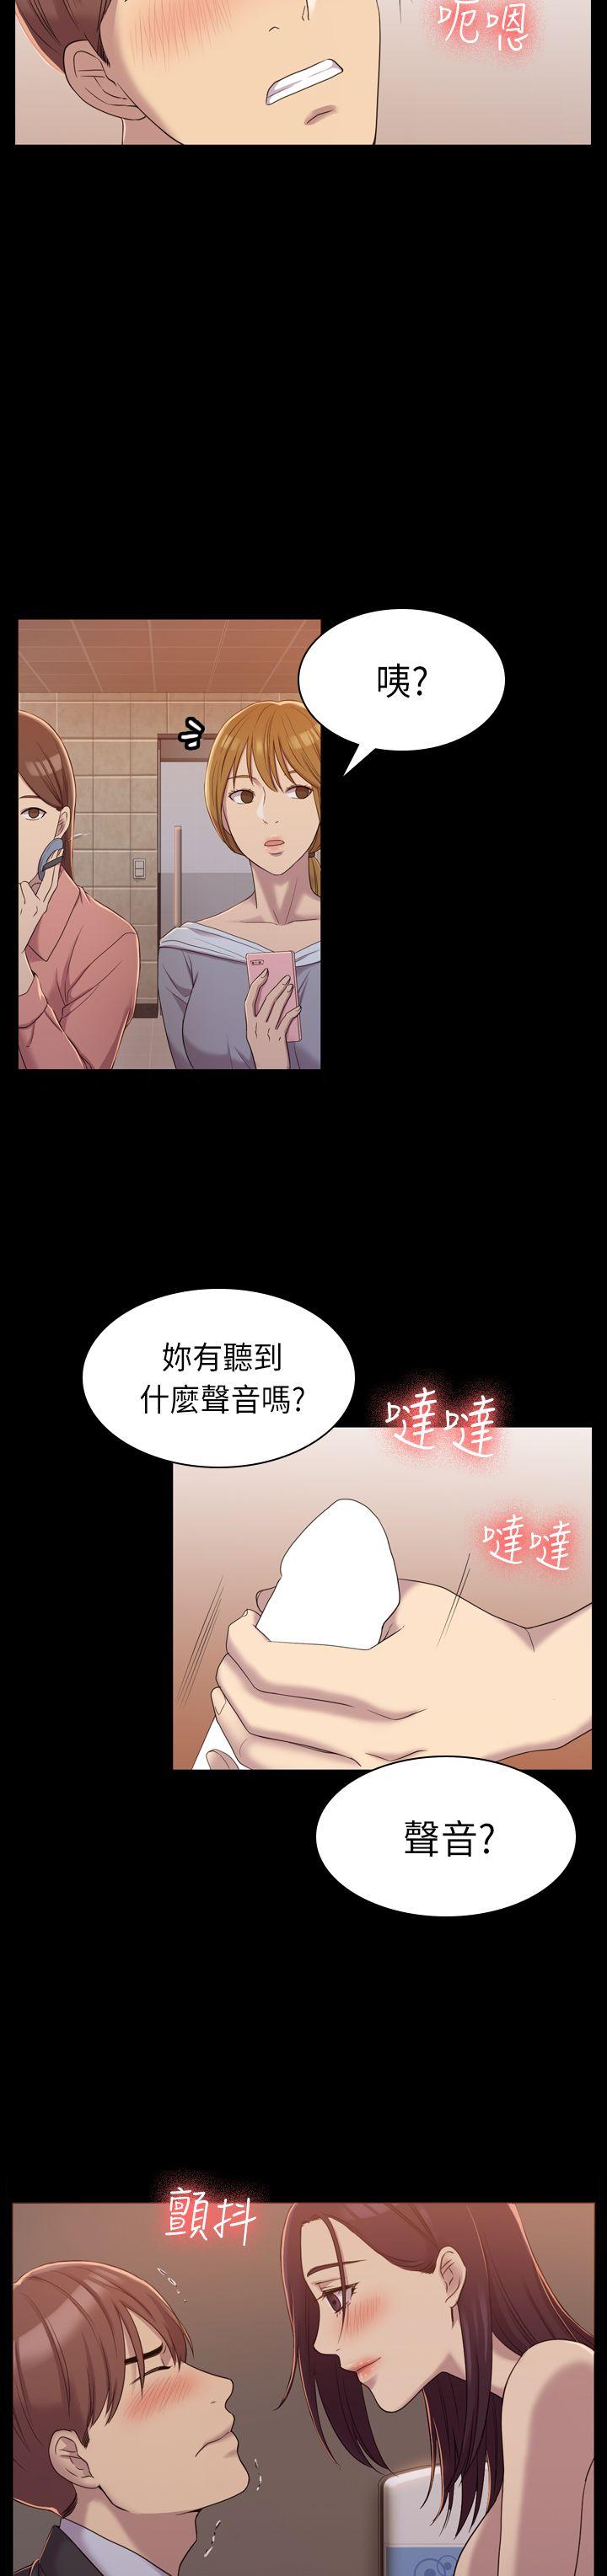 韩国污漫画 初戀陷阱 第8话 6